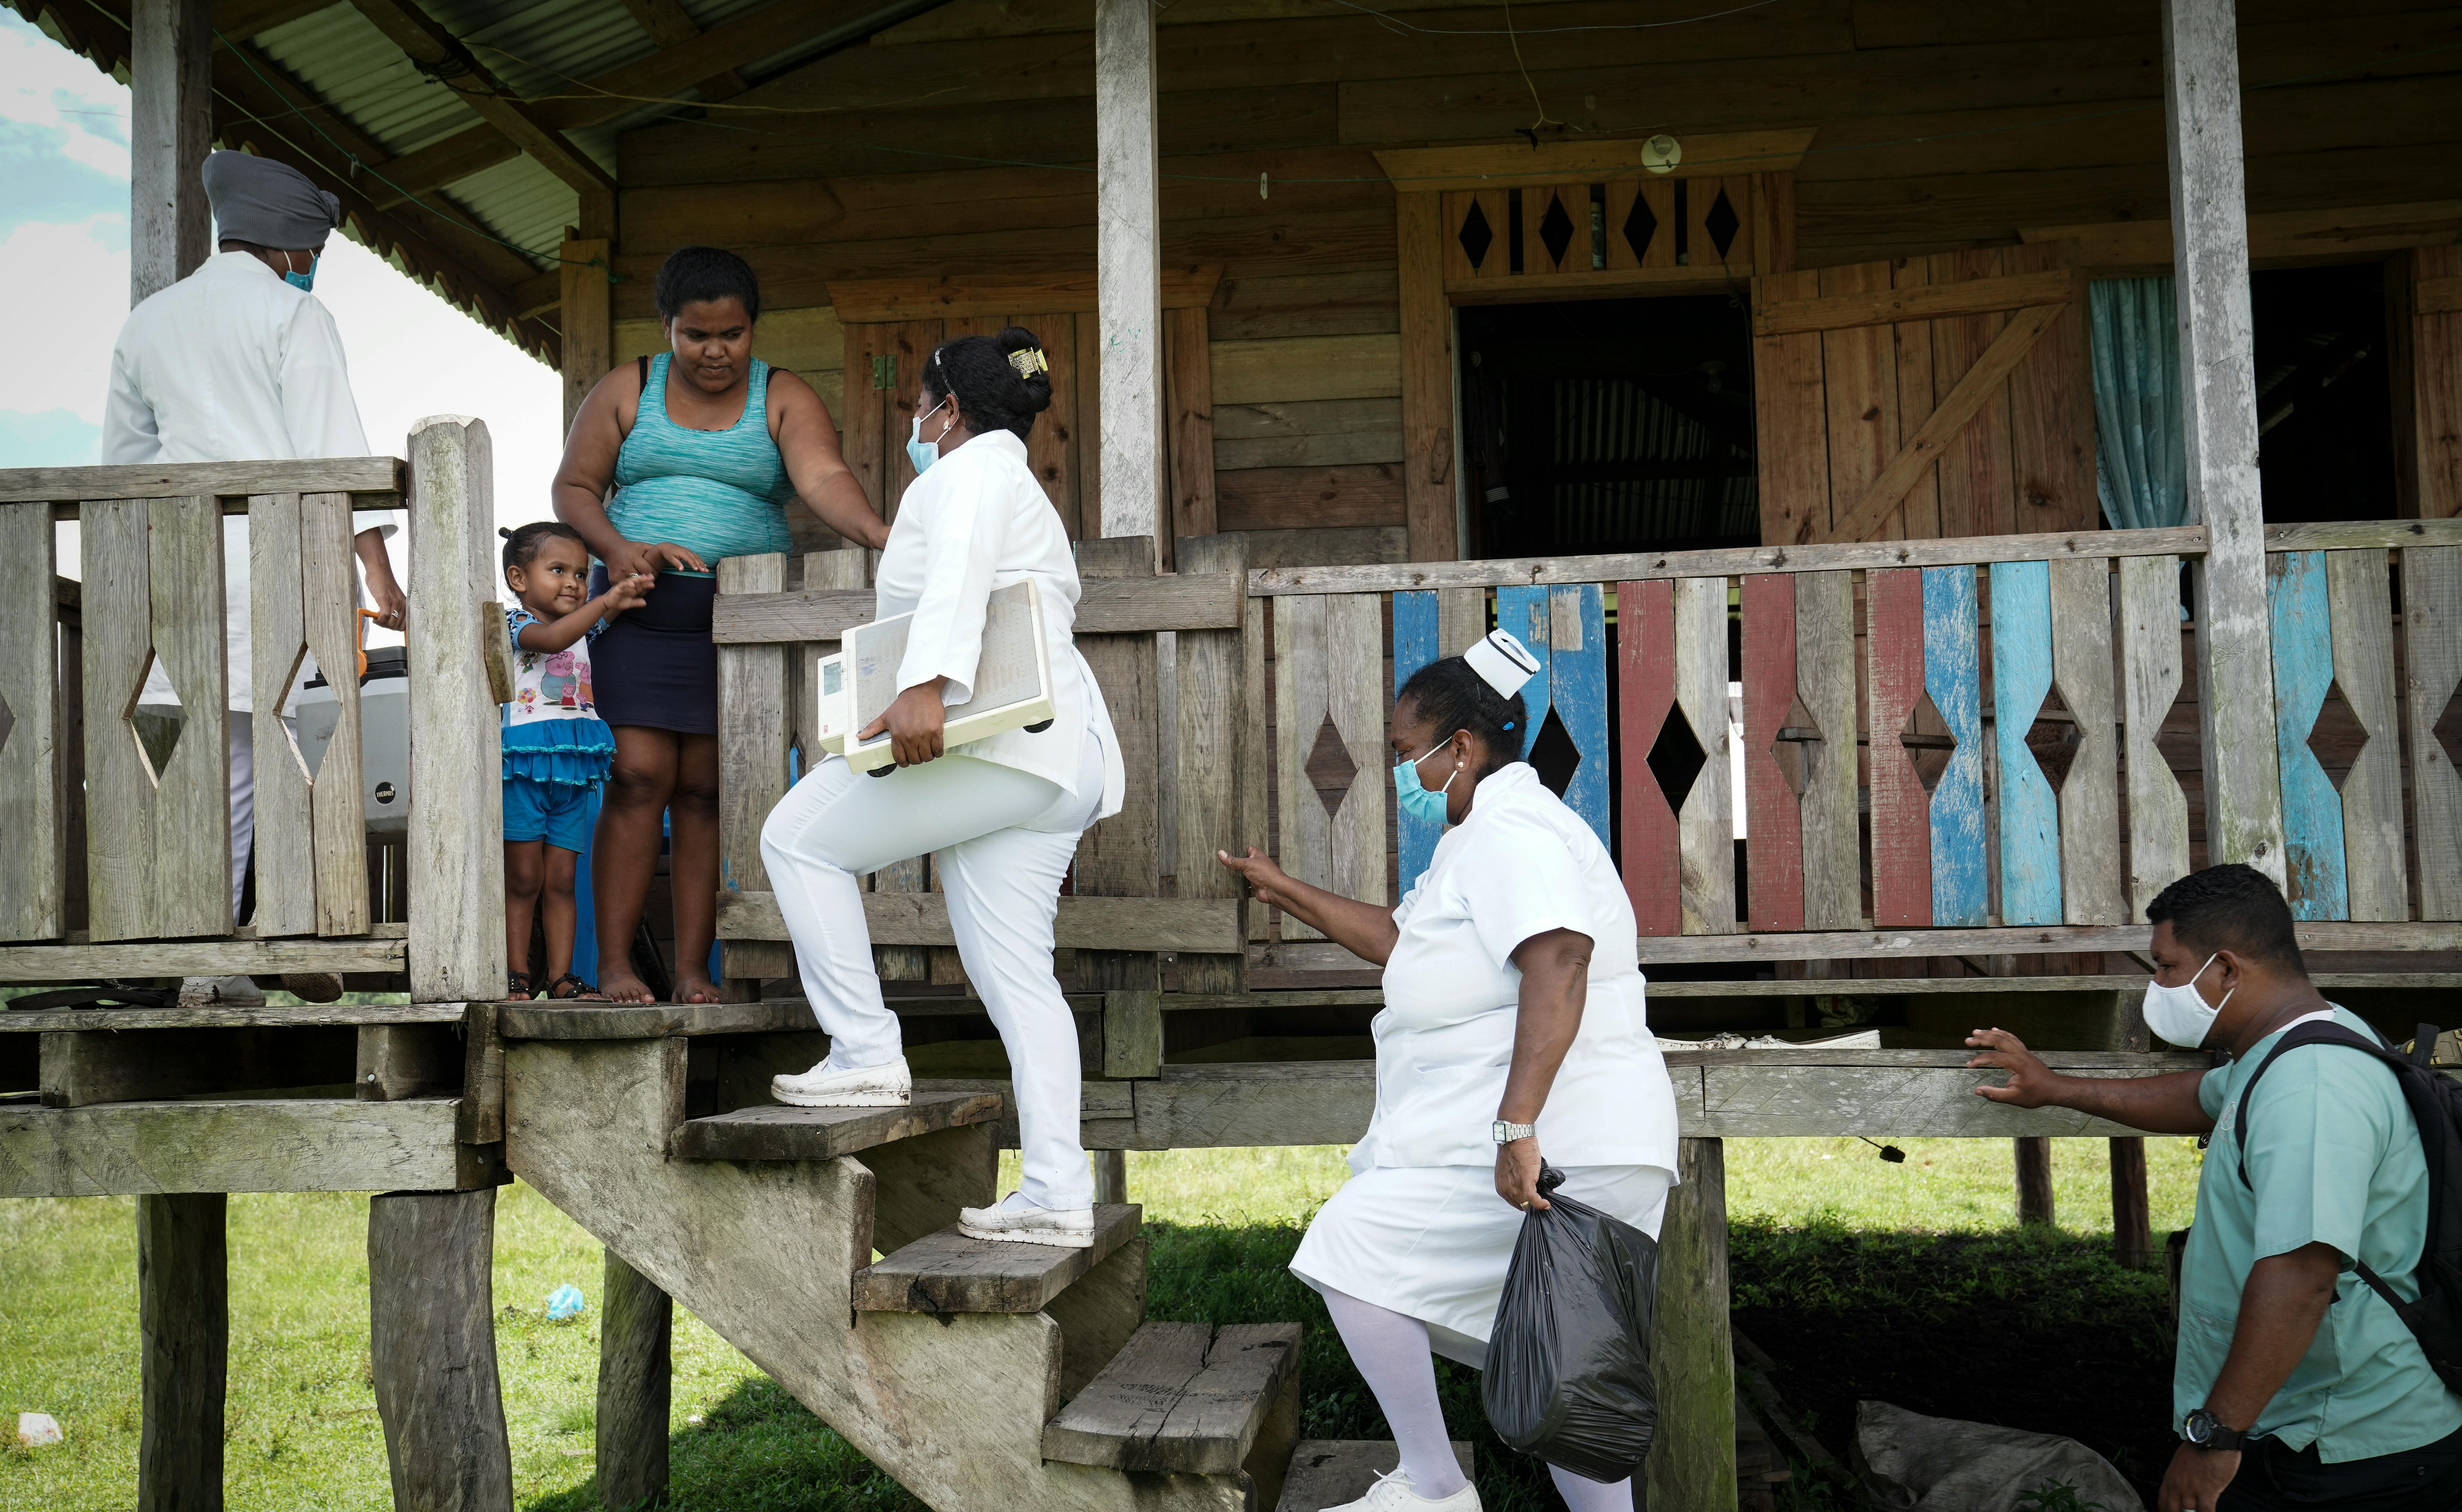 Le infermiere salgono a casa di Florencia Mena, dove vengono accolte da lei e dalla piccola Rihana. In Nicaragua gli infermieri sono un collegamento vitale tra i servizi del sistema sanitario nazionale e le popolazioni tradizionalmente difficili da raggiungere